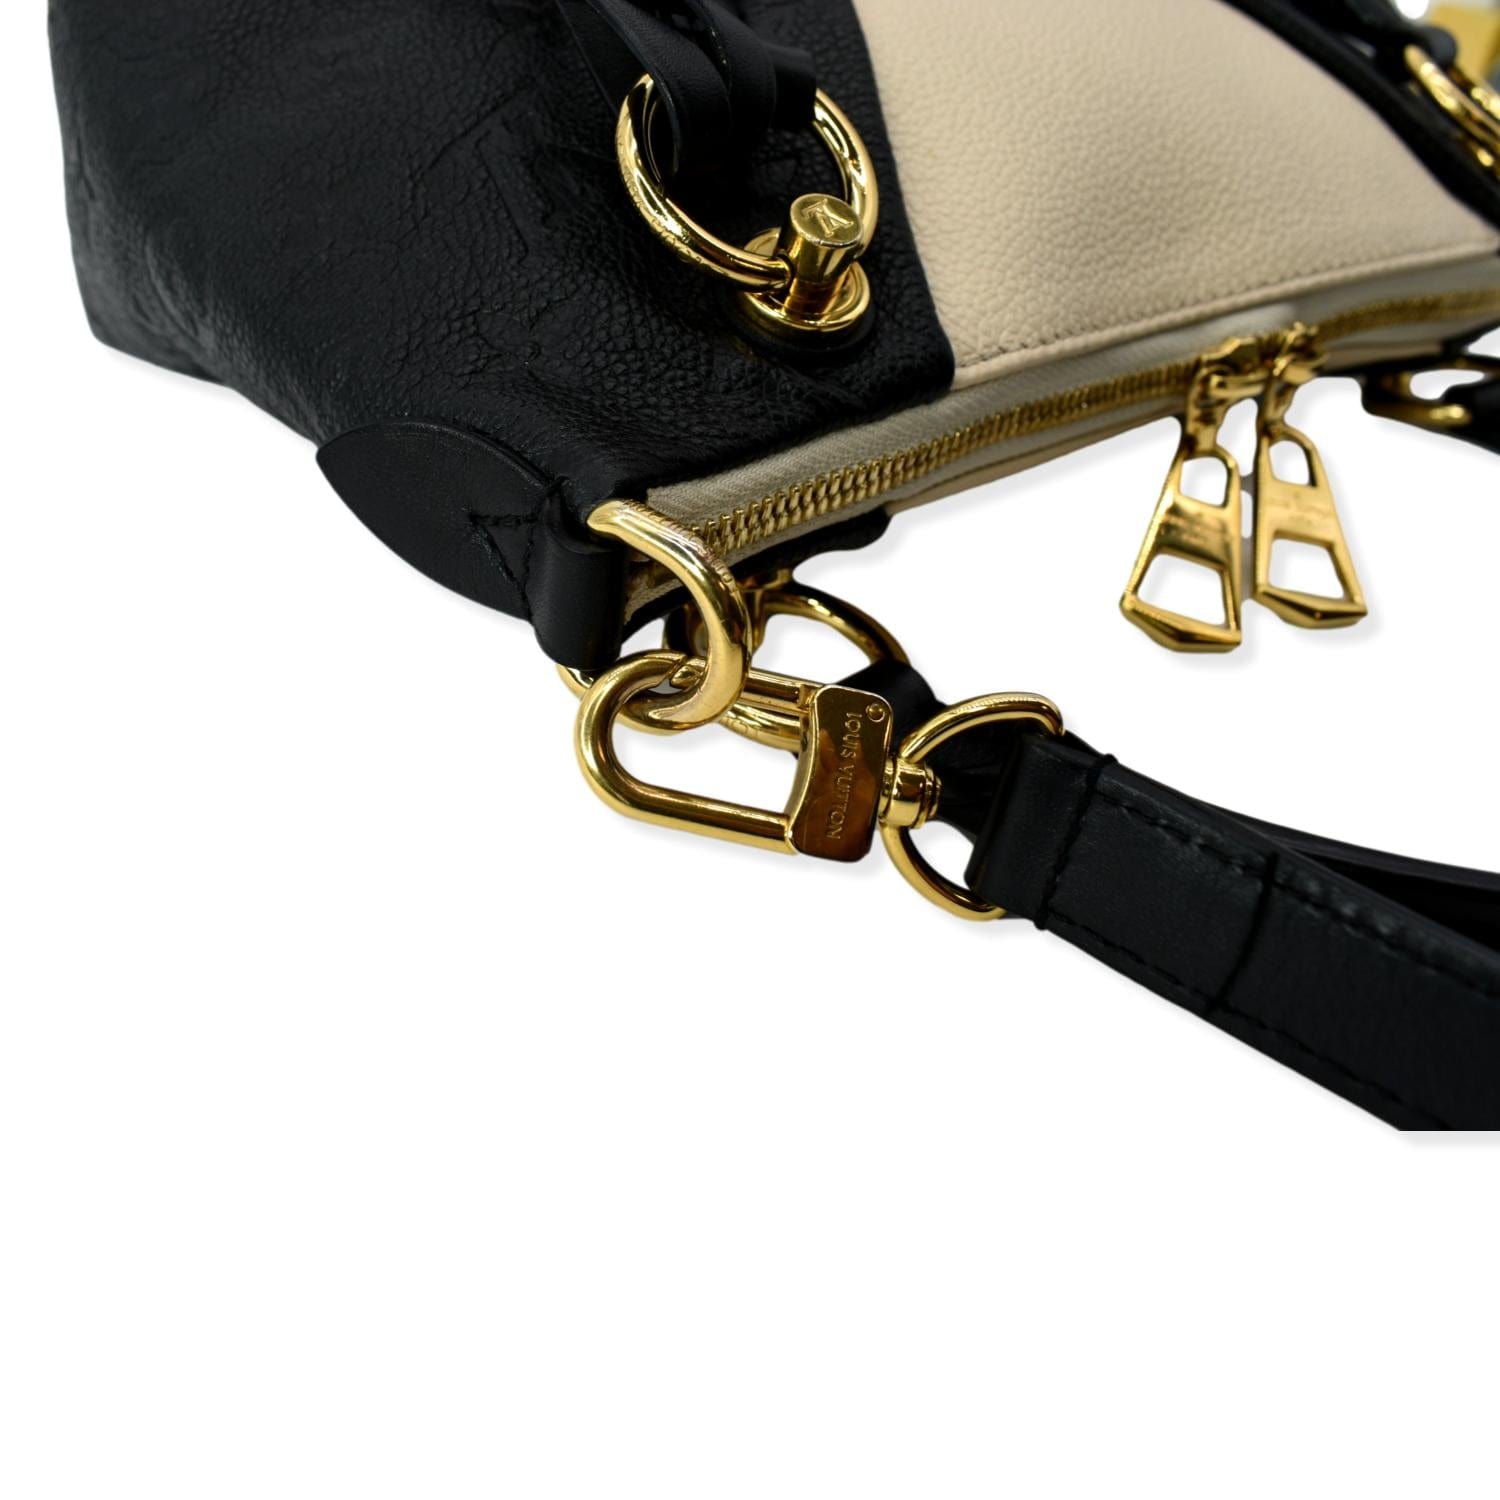 Louis Vuitton Black Impriente V Tote BB Handbag- No Longer In